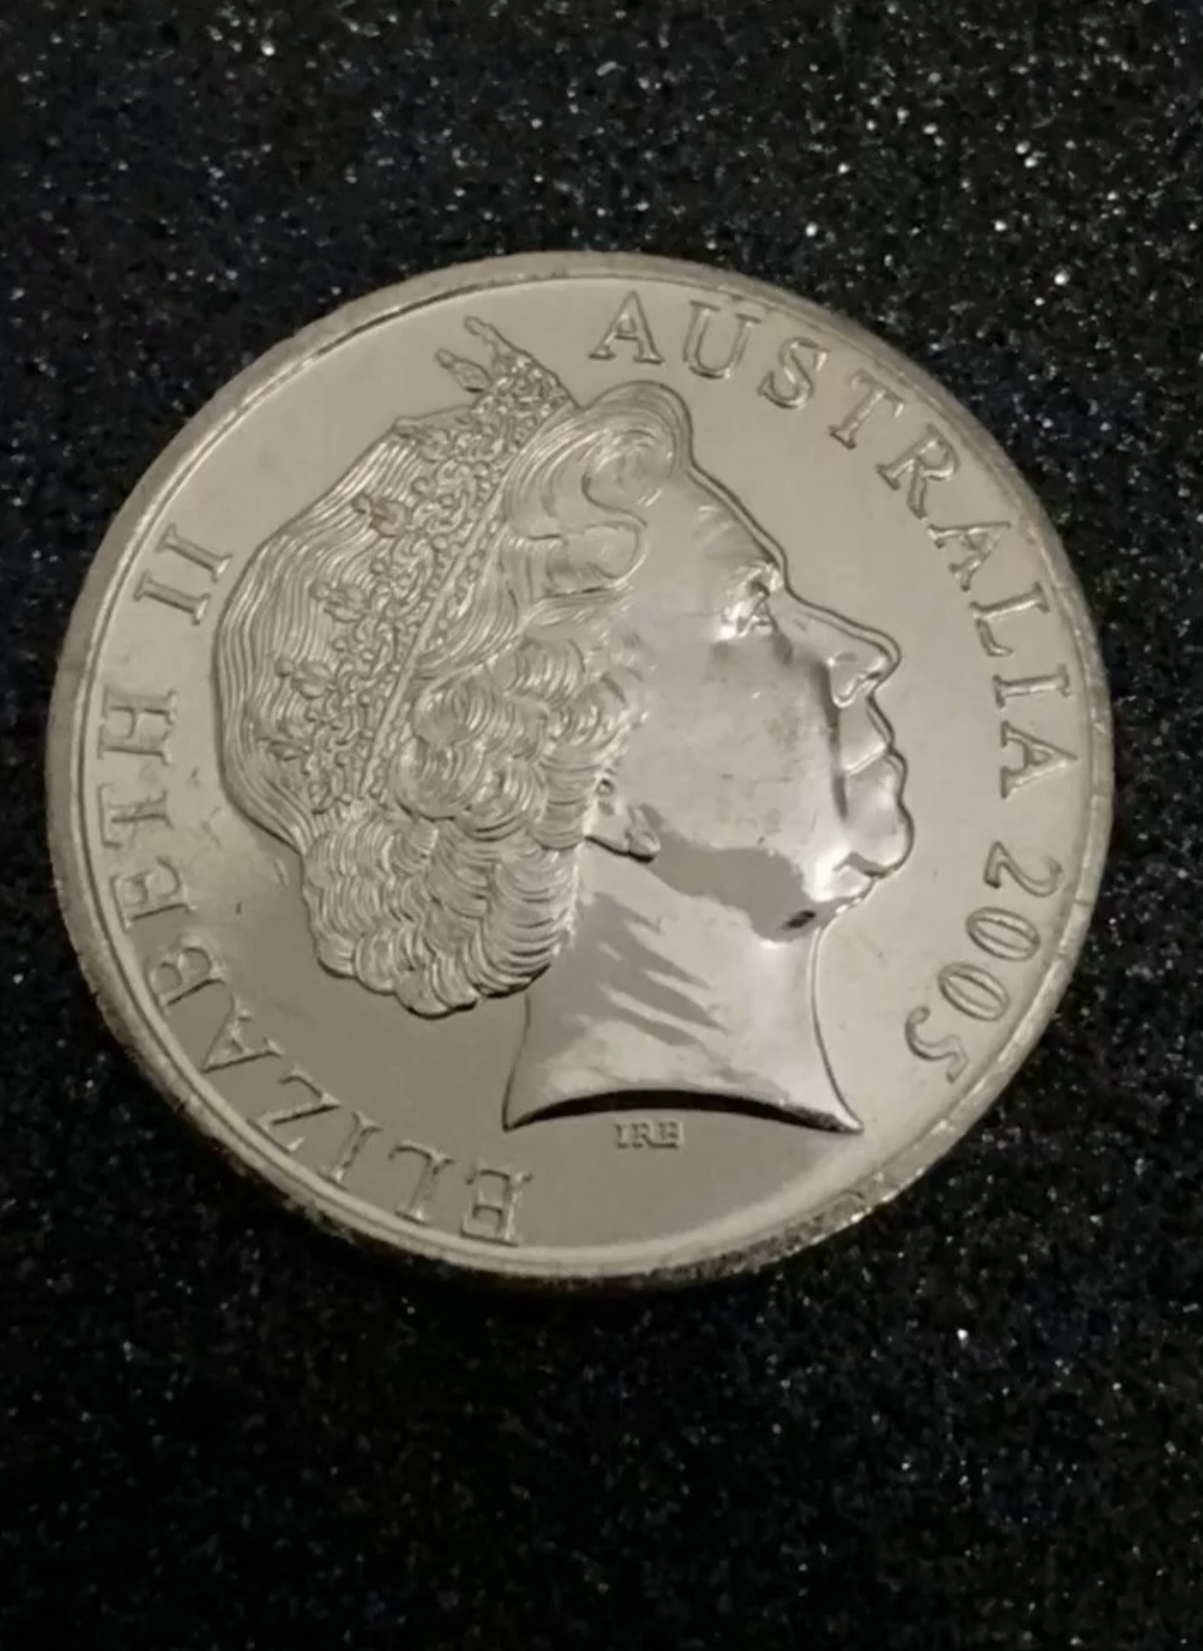 Australian 20 Cent Error Coin 2005 WORLD WAR 1939 - 1945 COMING HOME Double Struck Double Queen’s Face VF+ RARE